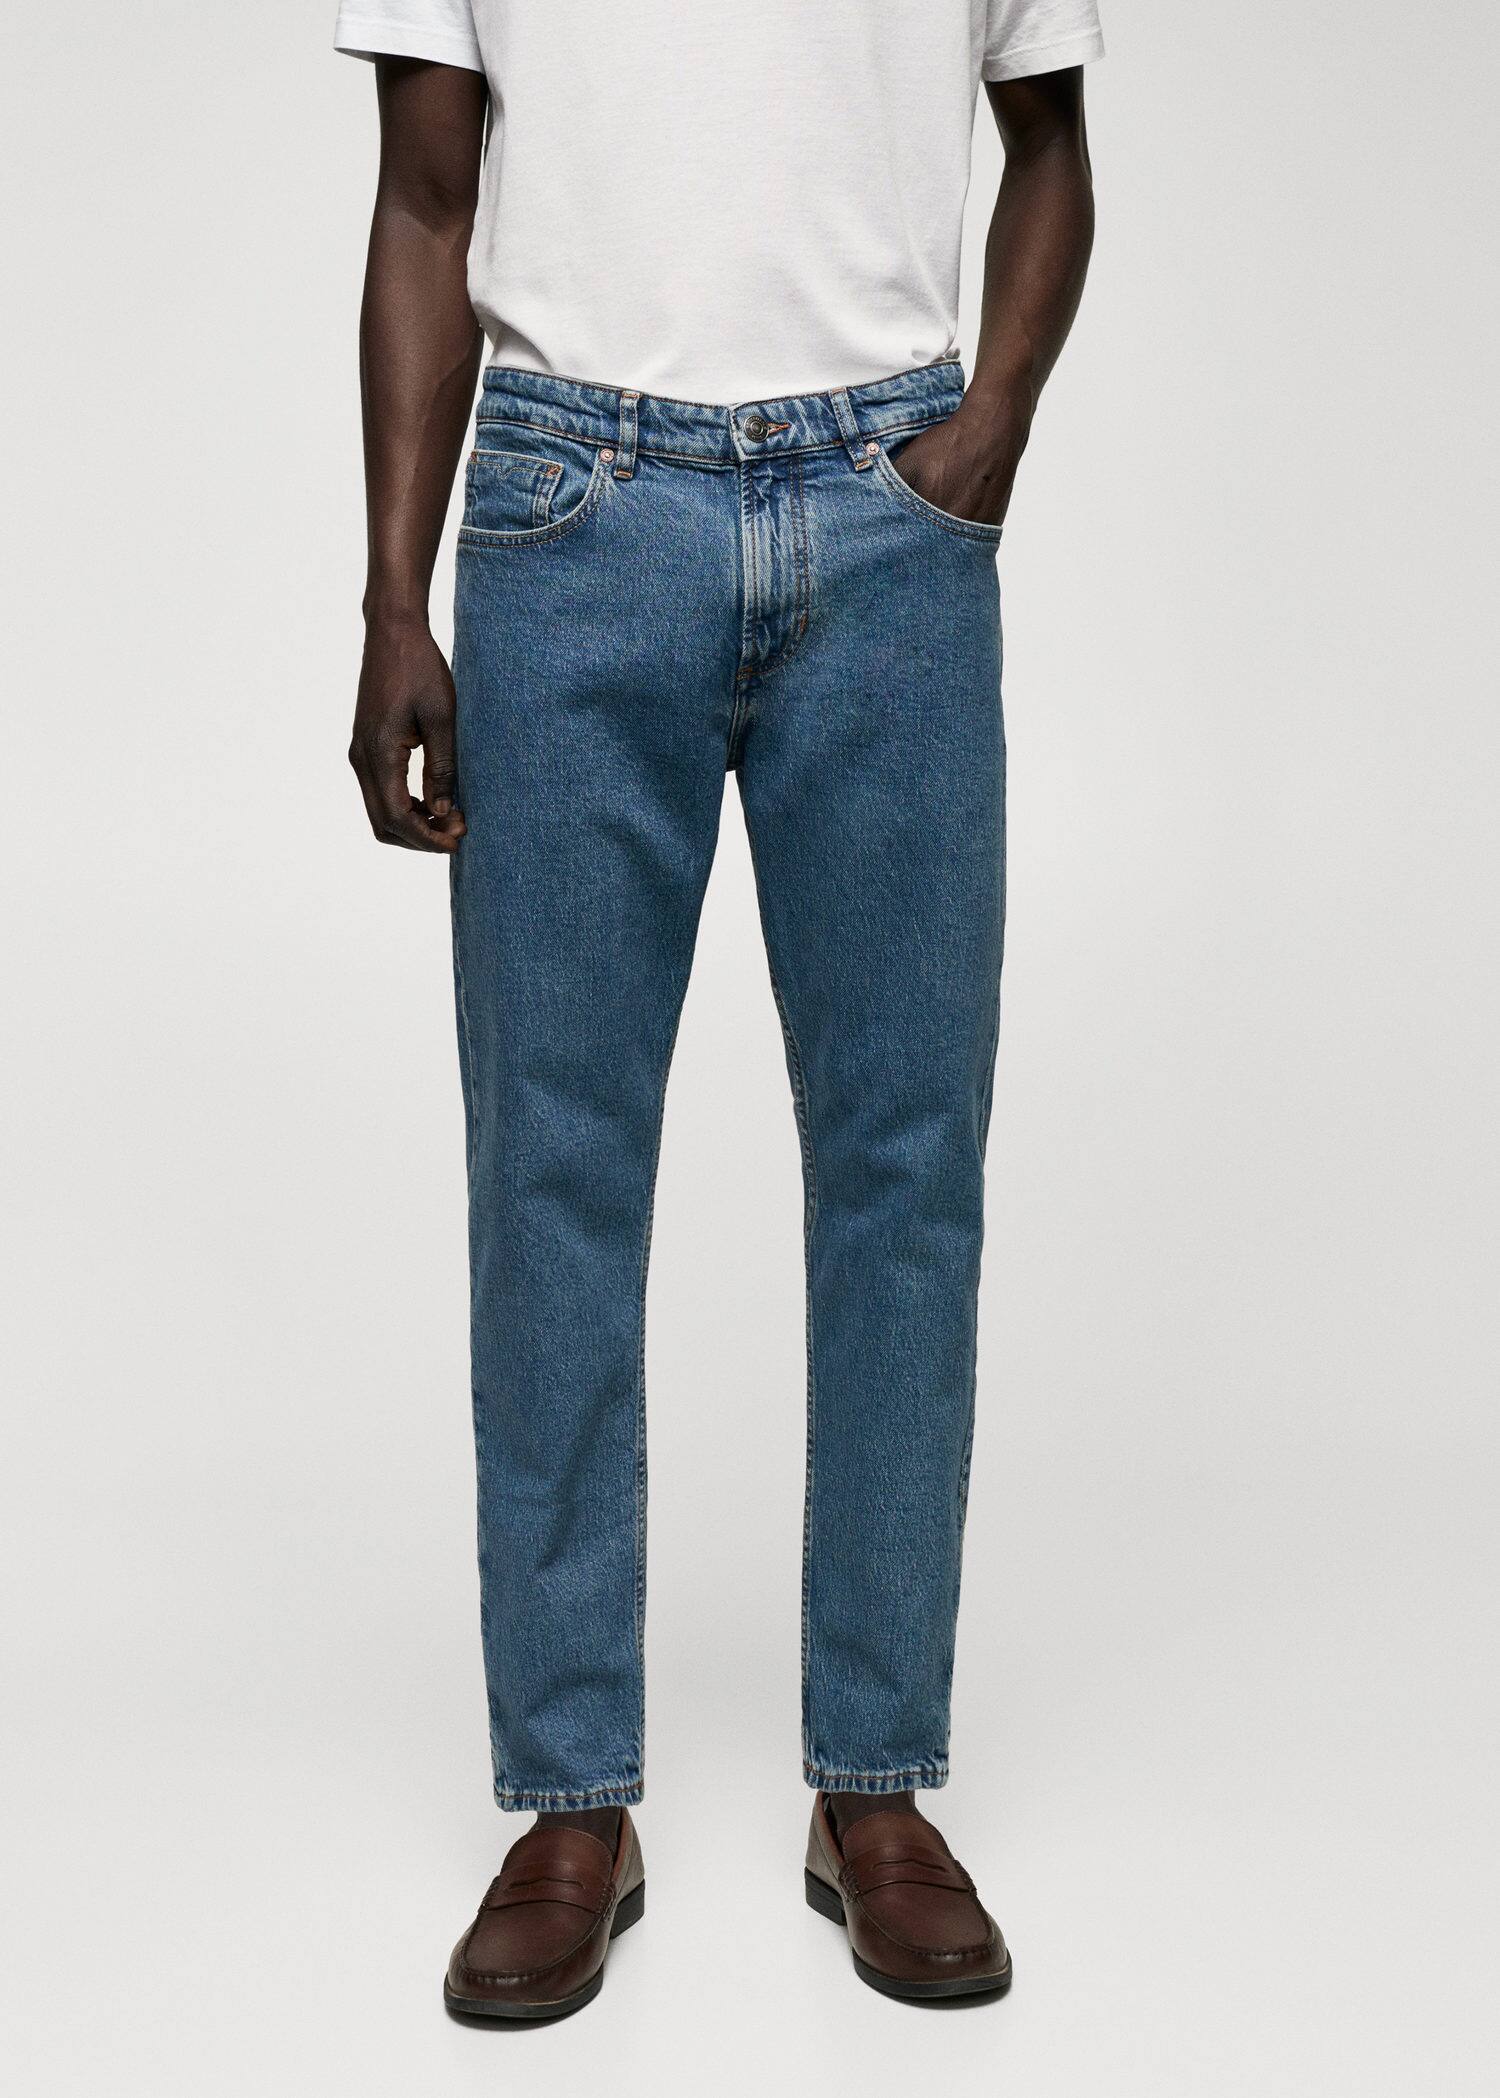 Ben tapered cropped jeans - Náhled ve středové rovině